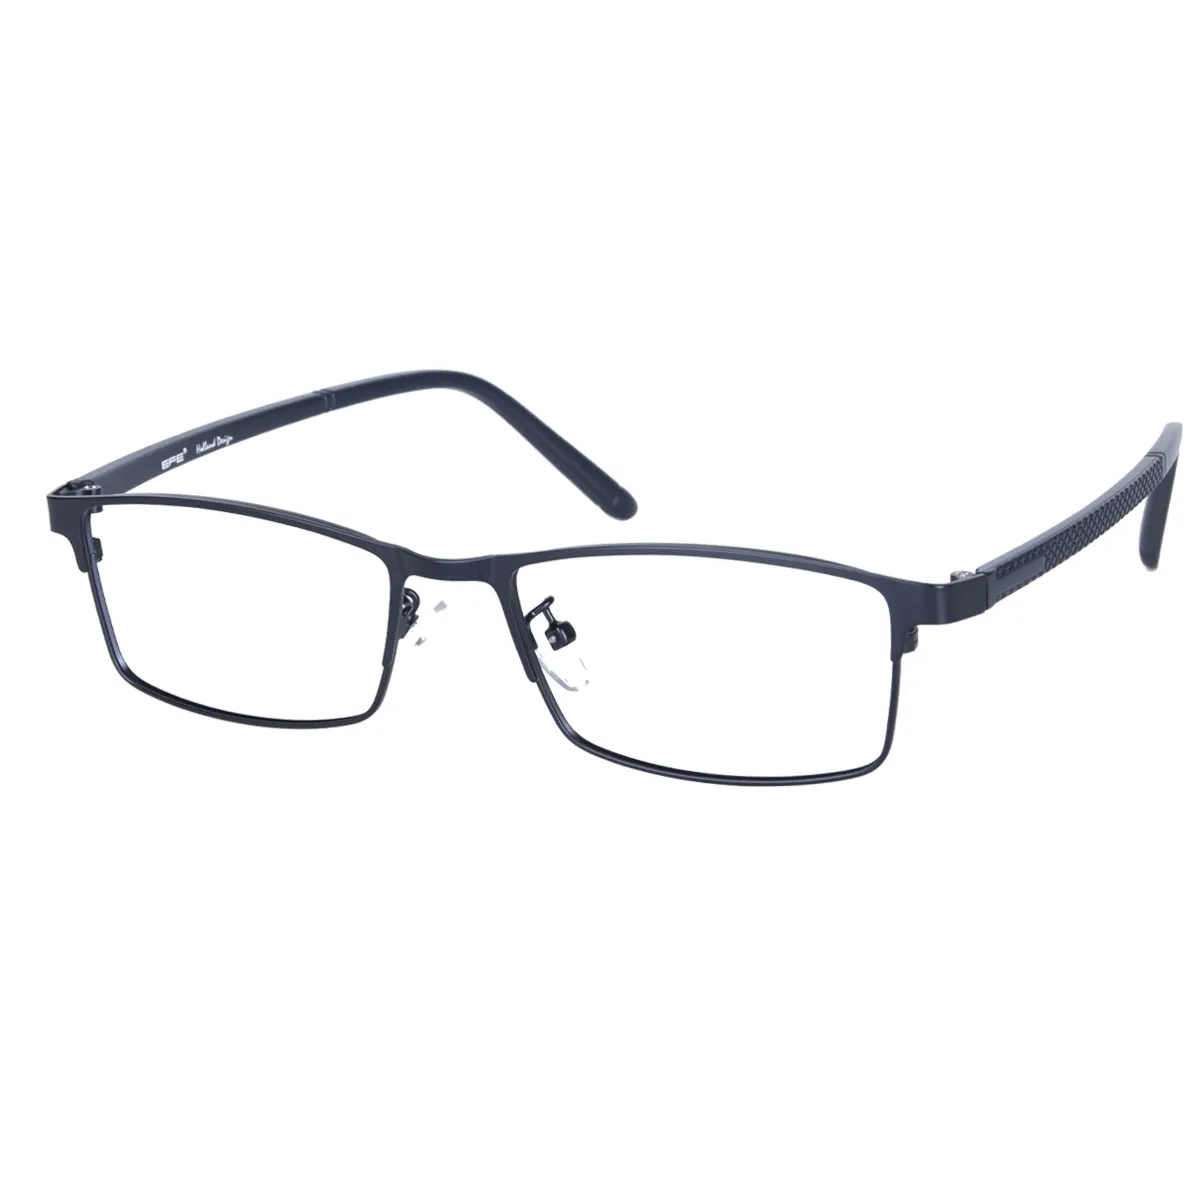 Don - Rectangle Blue Glasses for Men